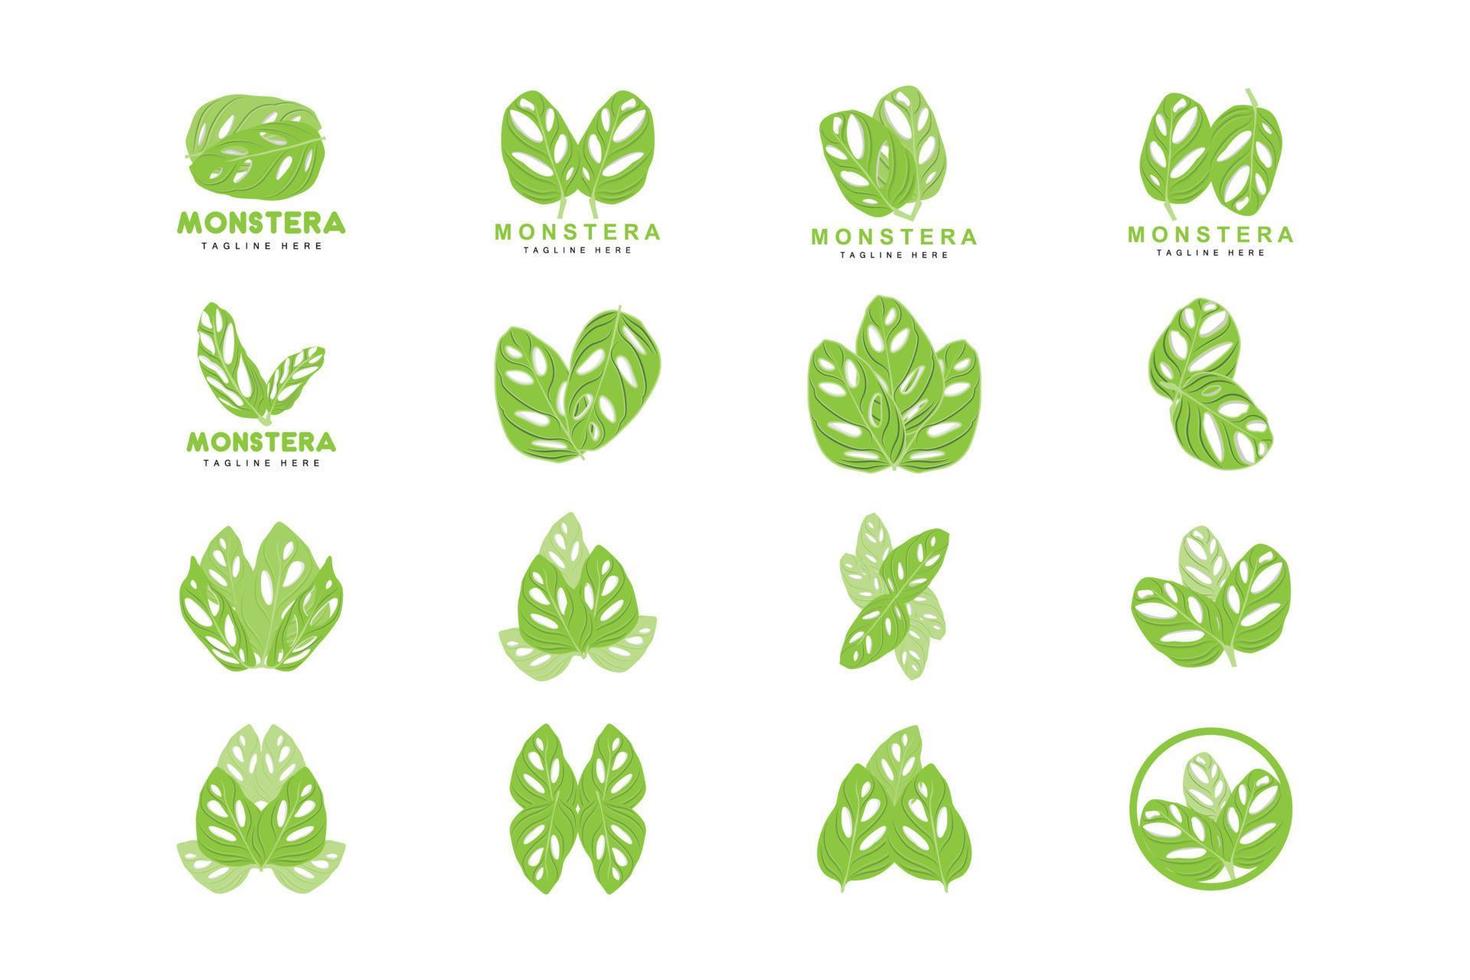 monstera adansonii blad logotyp, grön växt vektor, träd vektor, sällsynt blad illustration vektor